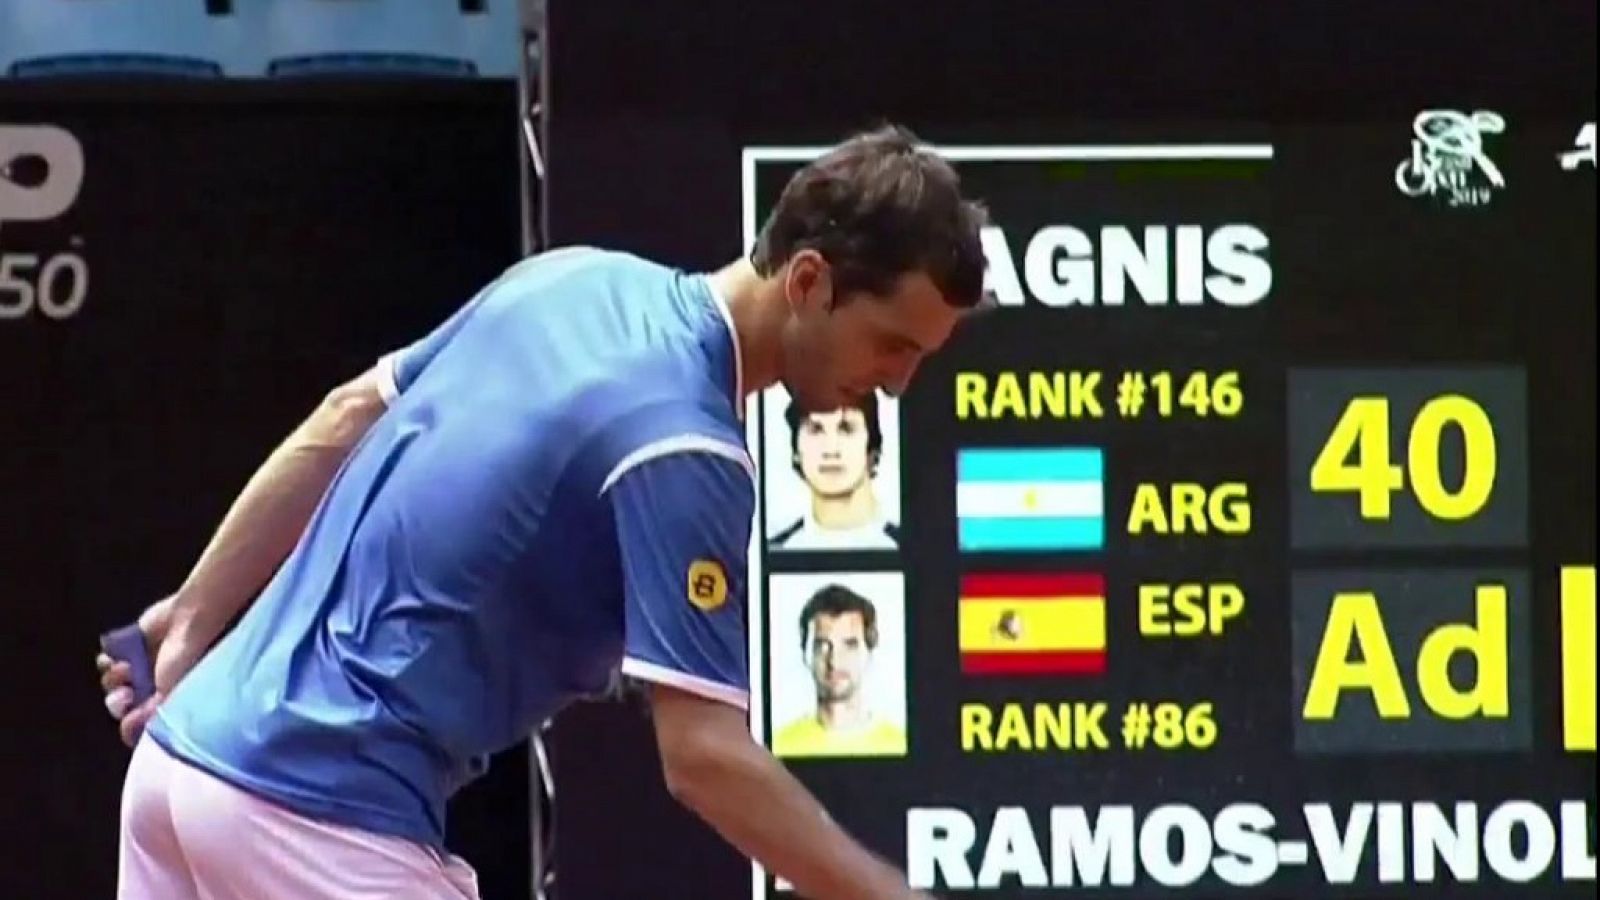 Tenis - ATP 250 Torneo Sao Paulo: F. Bagnis - A. Ramos-Vinolas